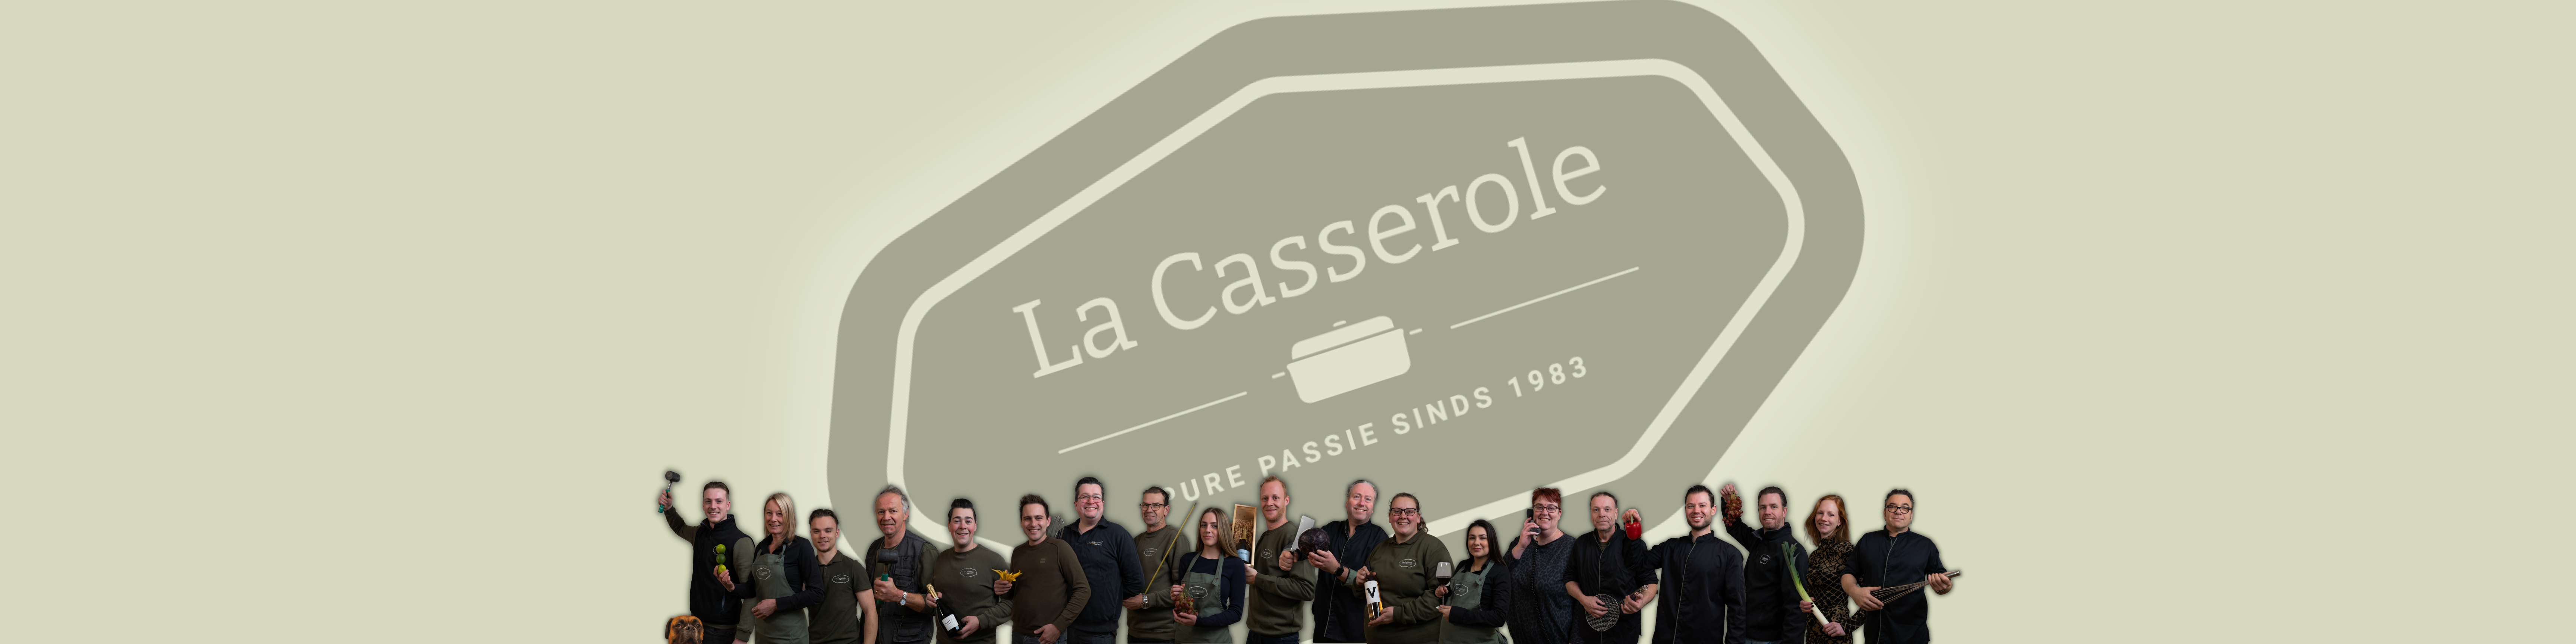 Team La Casserole